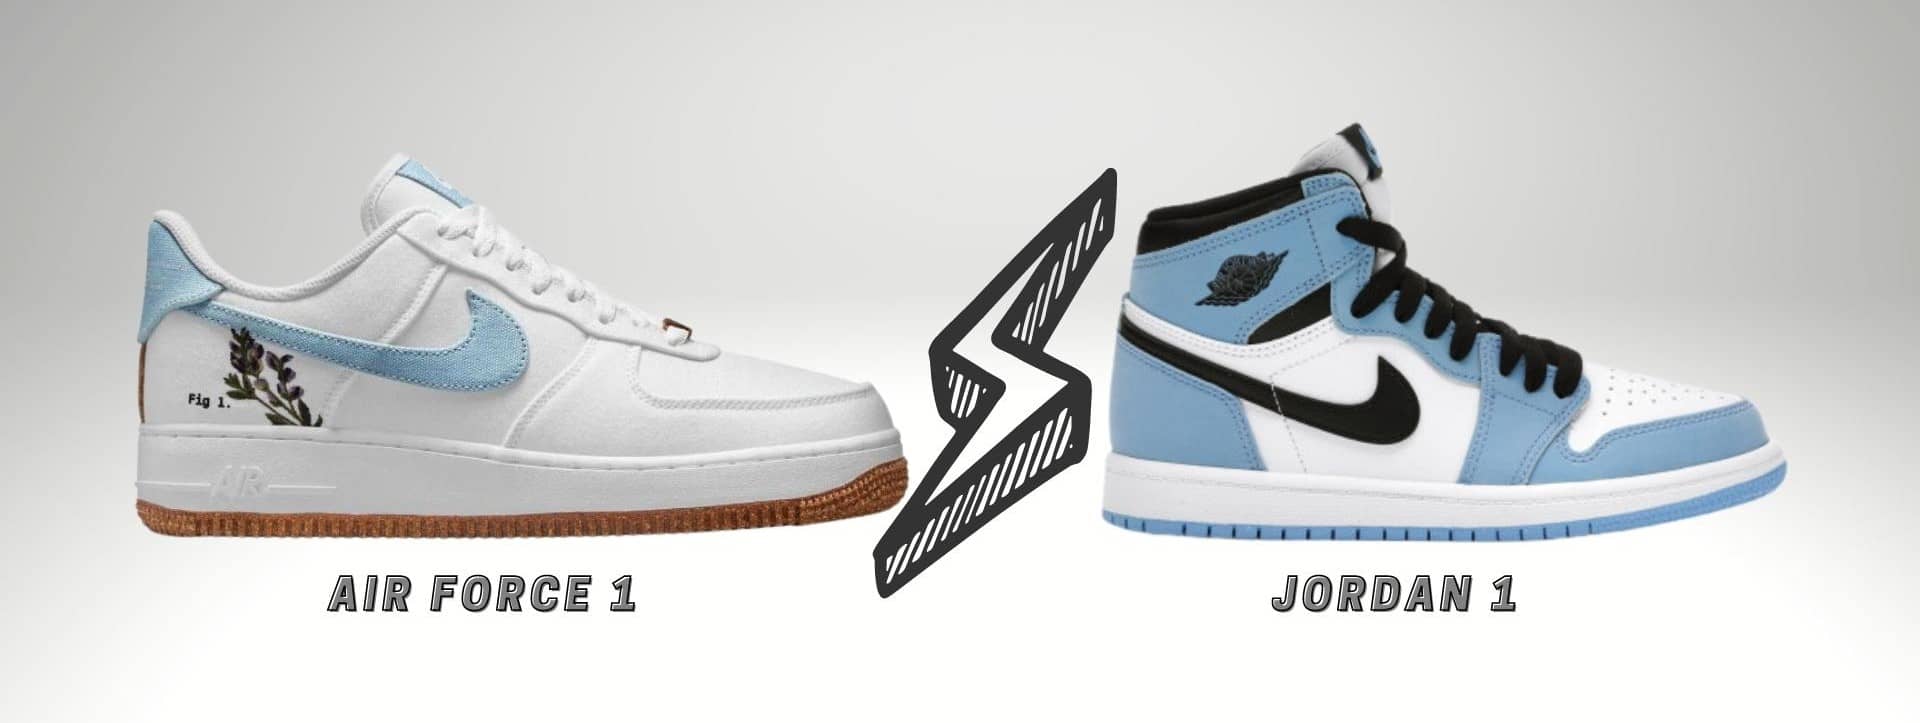 Nike Air Force 1 vs Jordan 1